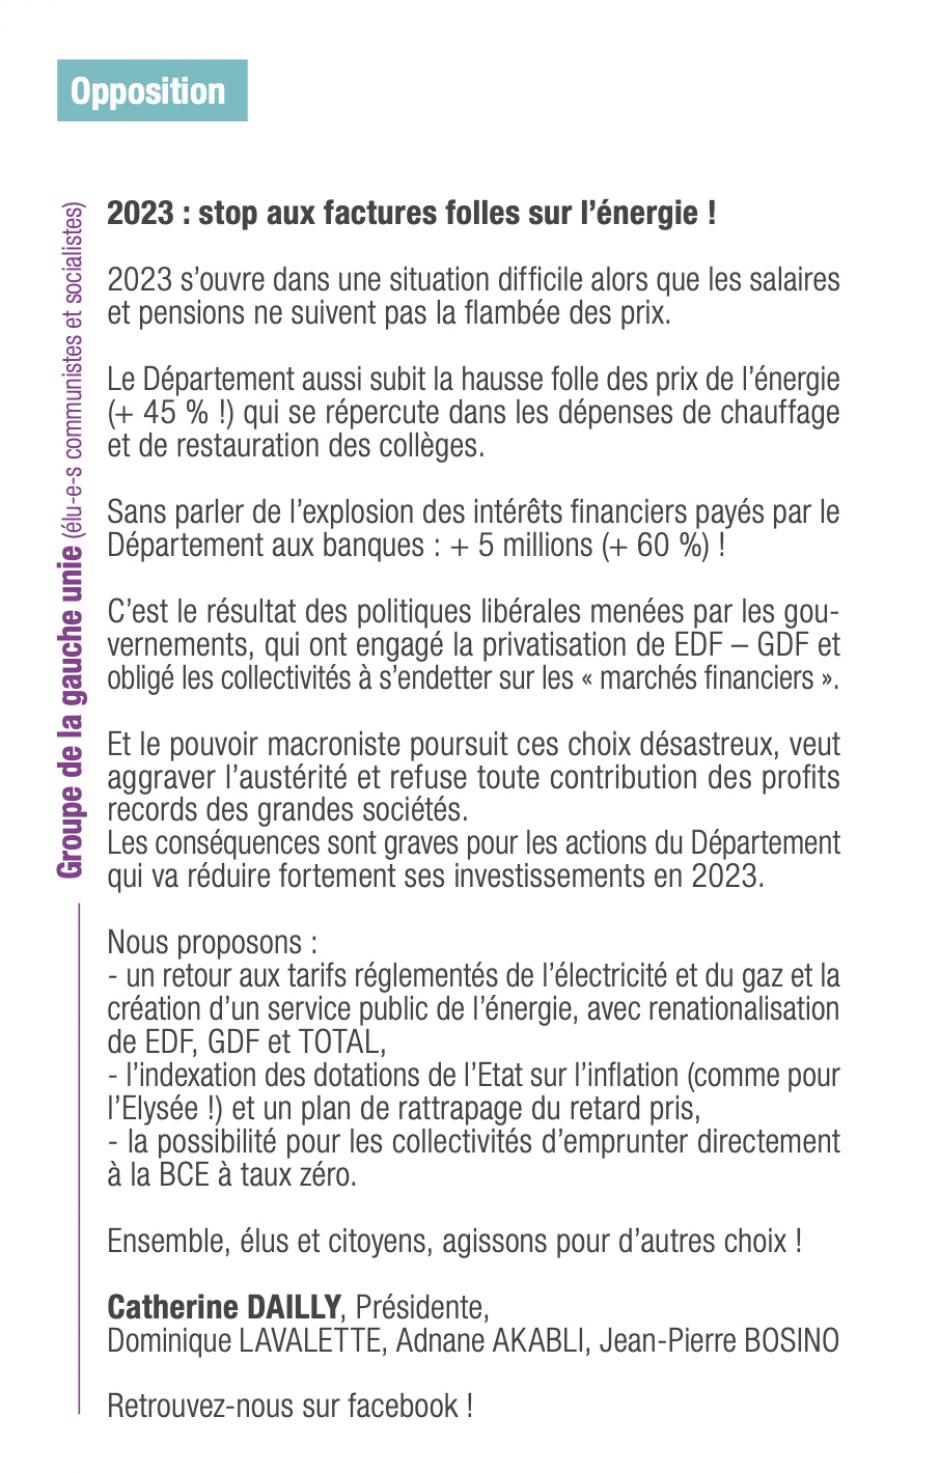 Expression politique du groupe de la gauche unie « 2023 : stop aux factures folles sur l'énergie ! » - Oise Magazine n° 26, janvier-mars 2023